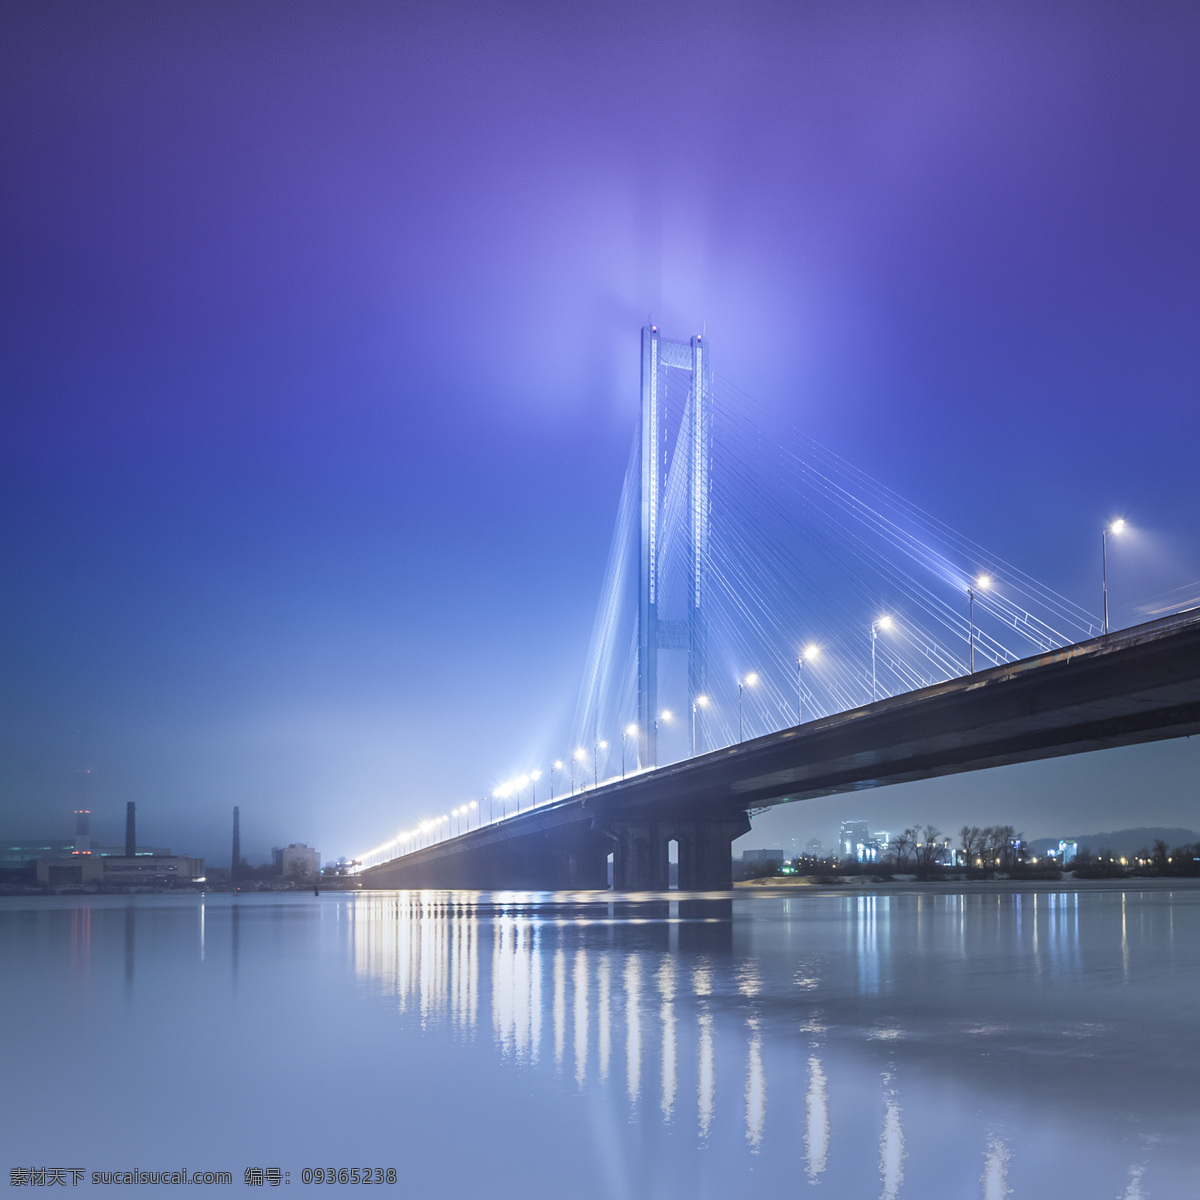 斜拉桥夜景 斜拉桥 大桥夜景 大桥风景 桥梁建筑 美丽大桥风景 建筑设计 环境家居 蓝色